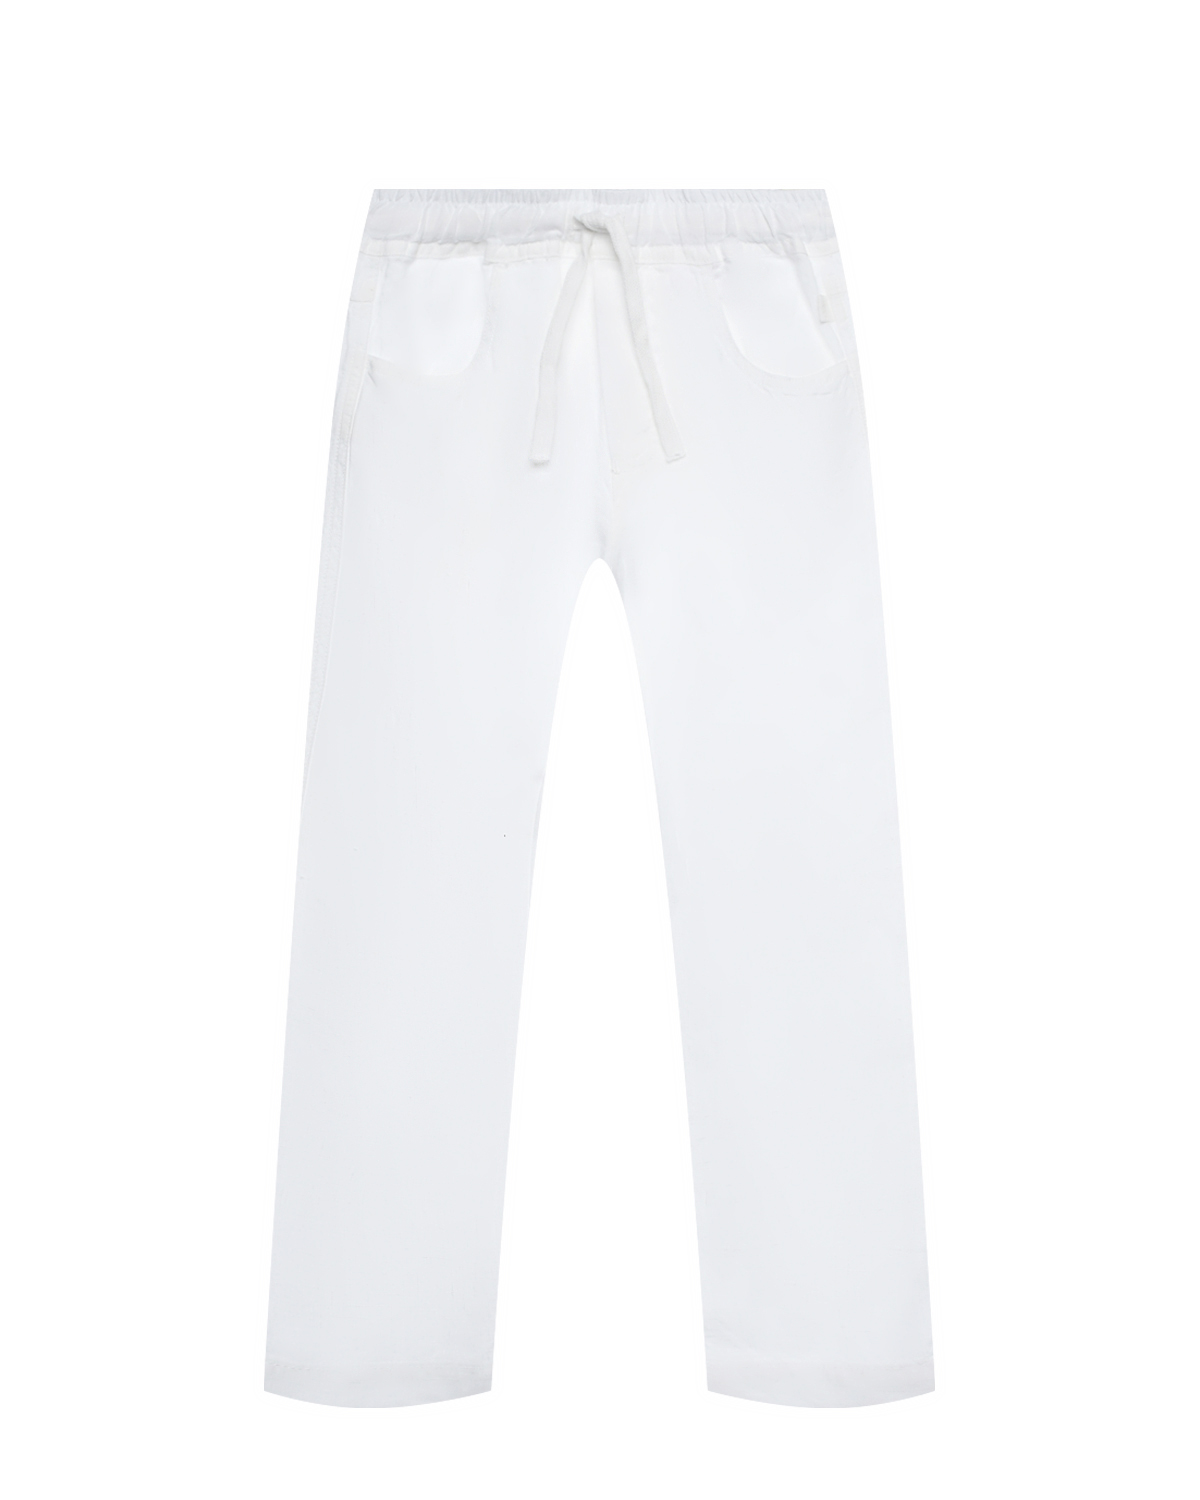 Льняные брюки с поясом на кулиске IL Gufo, размер 140, цвет белый